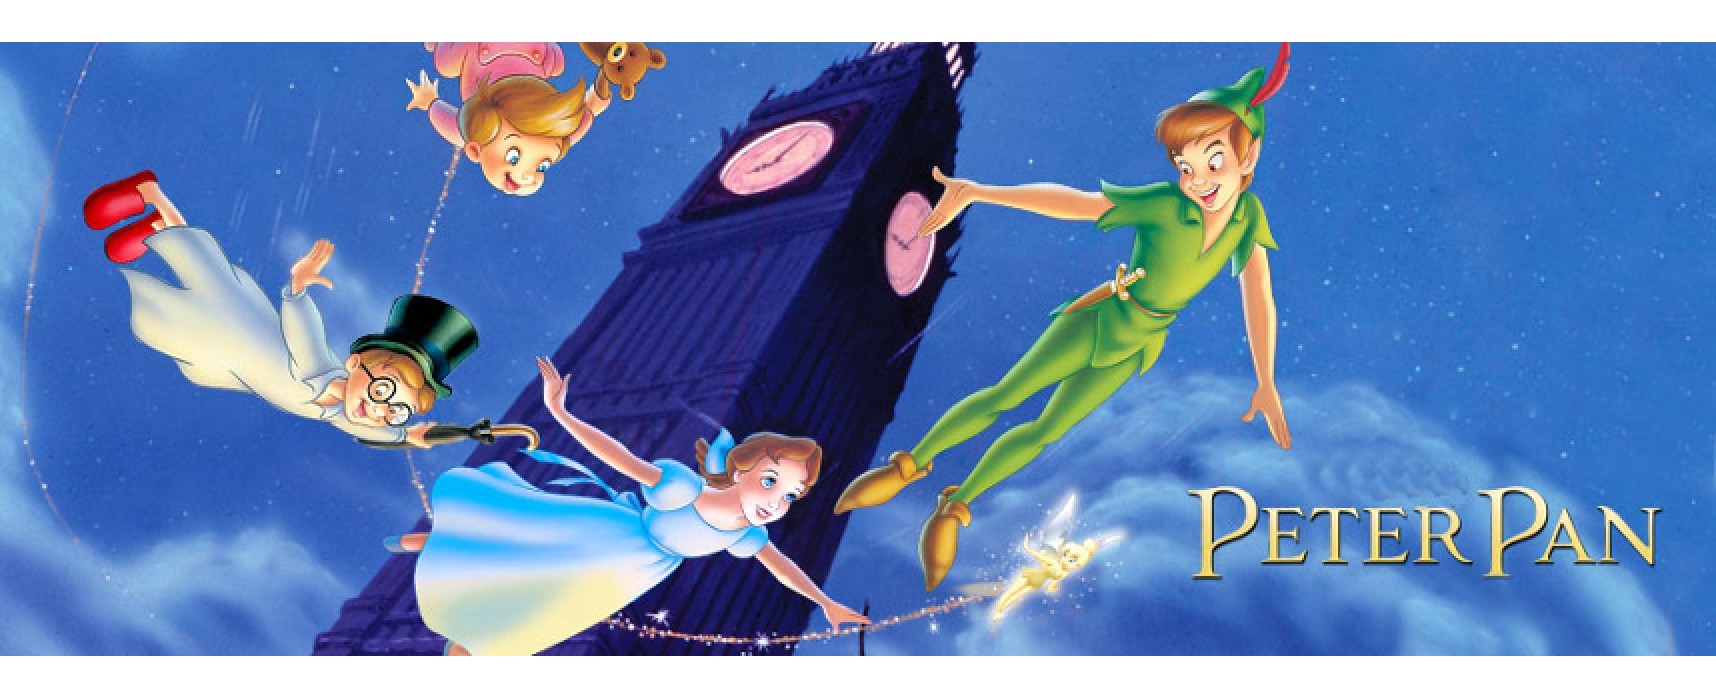 Il teatro dei burattini domani a Bisceglie con lo spettacolo di “Peter Pan”